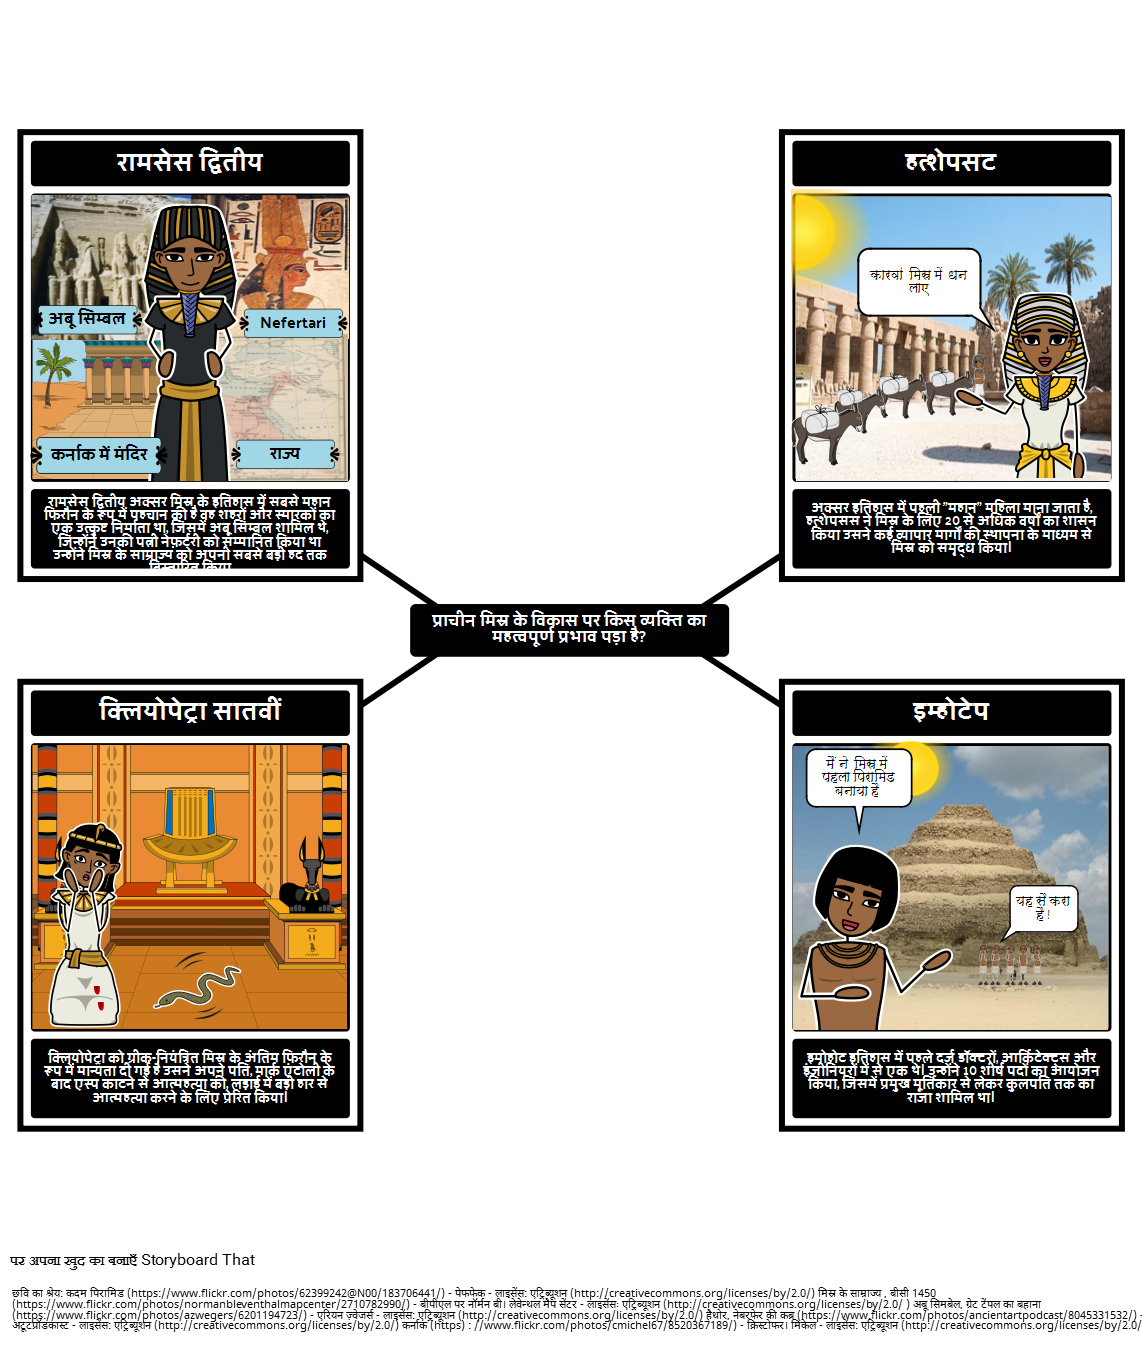 प्राचीन मिस्र के लिए परिचय - प्राचीन मिस्र के महत्वपूर्ण आंकड़े